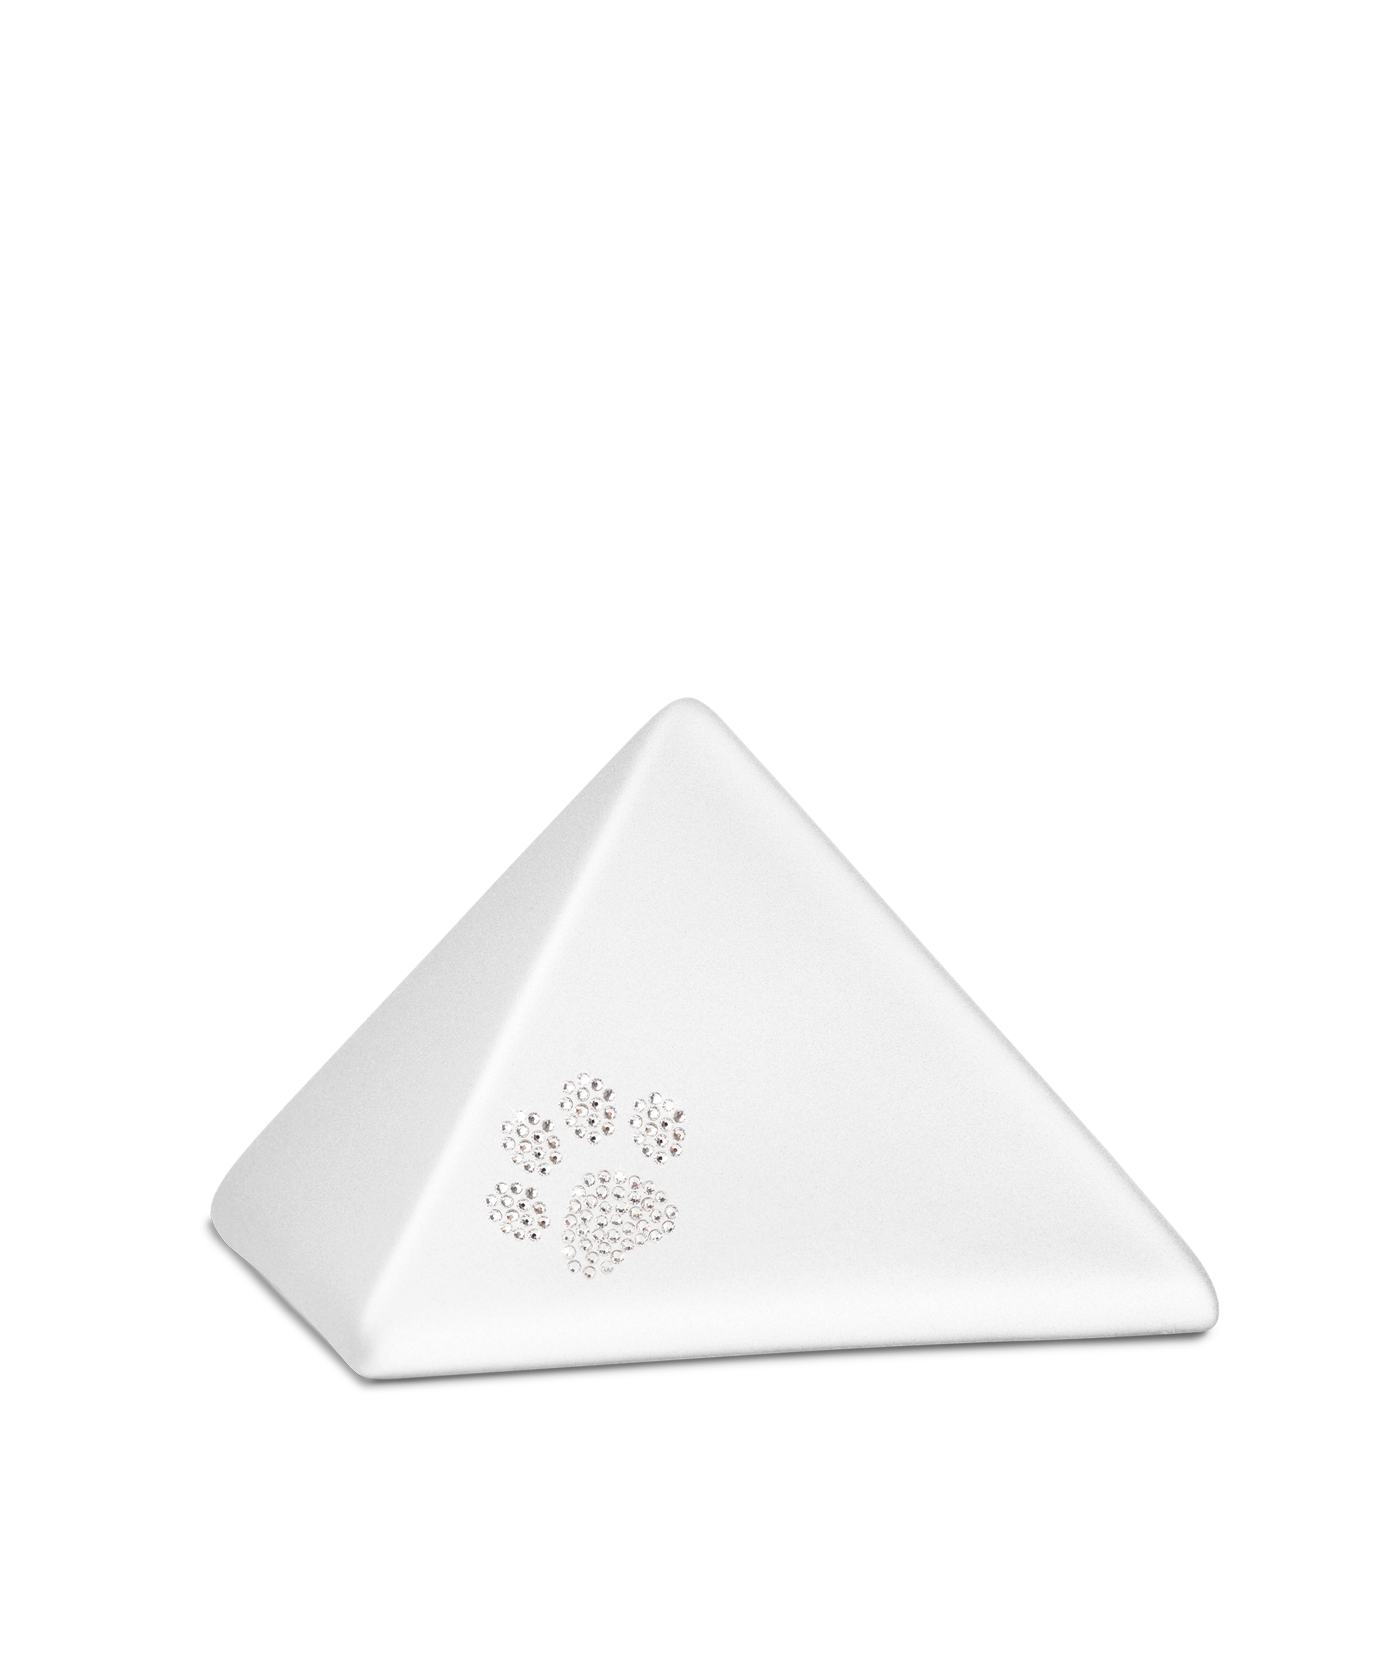 Tierurne - Keramik Pyramide weiß Pfote Kristalle 500ml